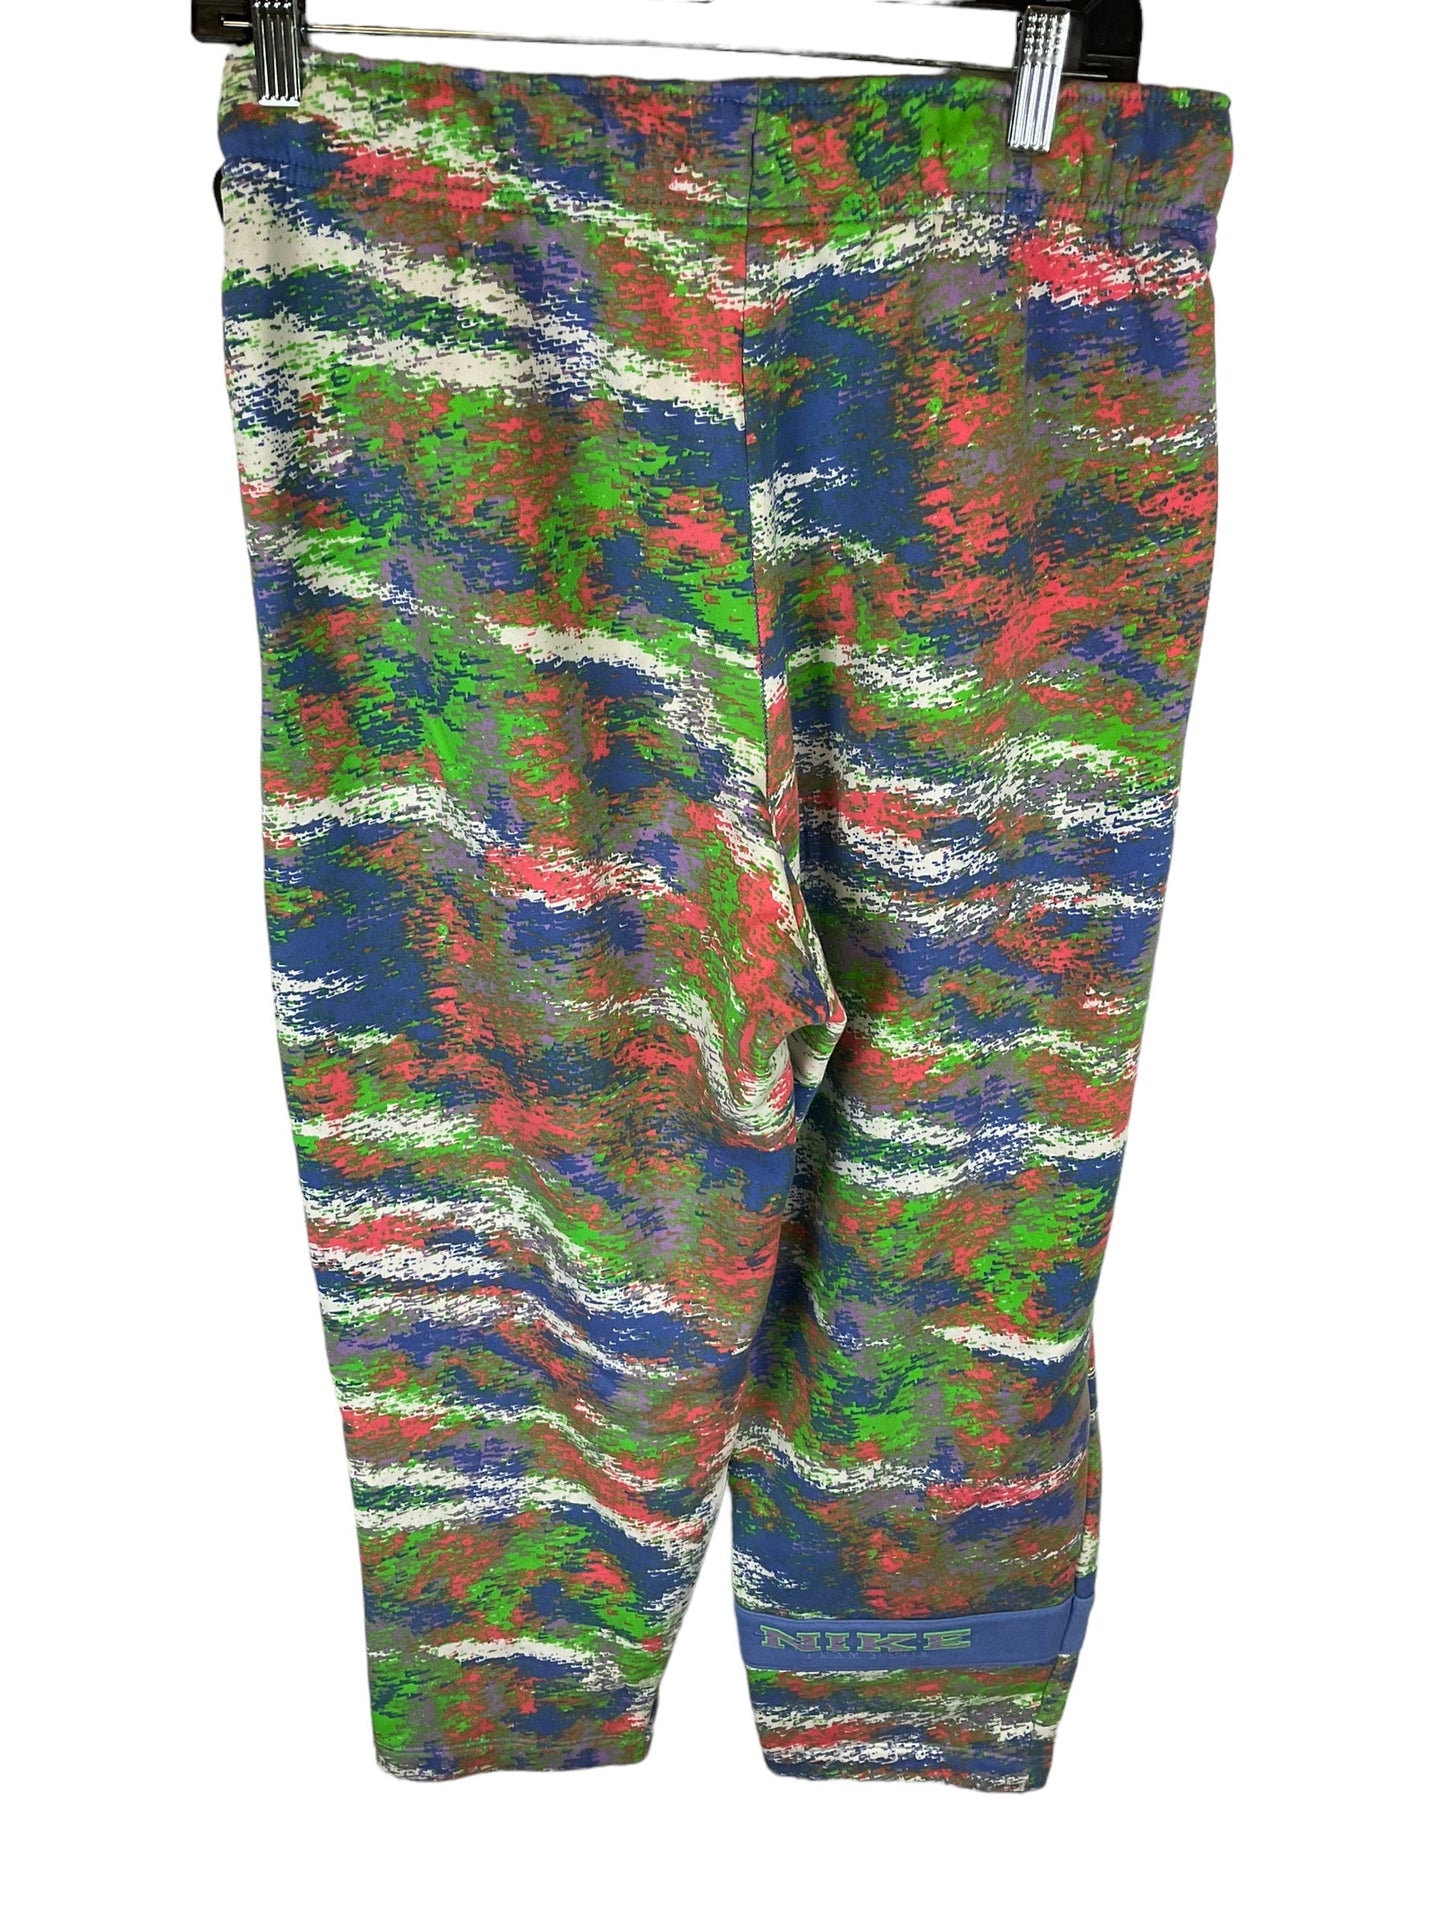 Pants Sweatpants By Nike Apparel  Size: M